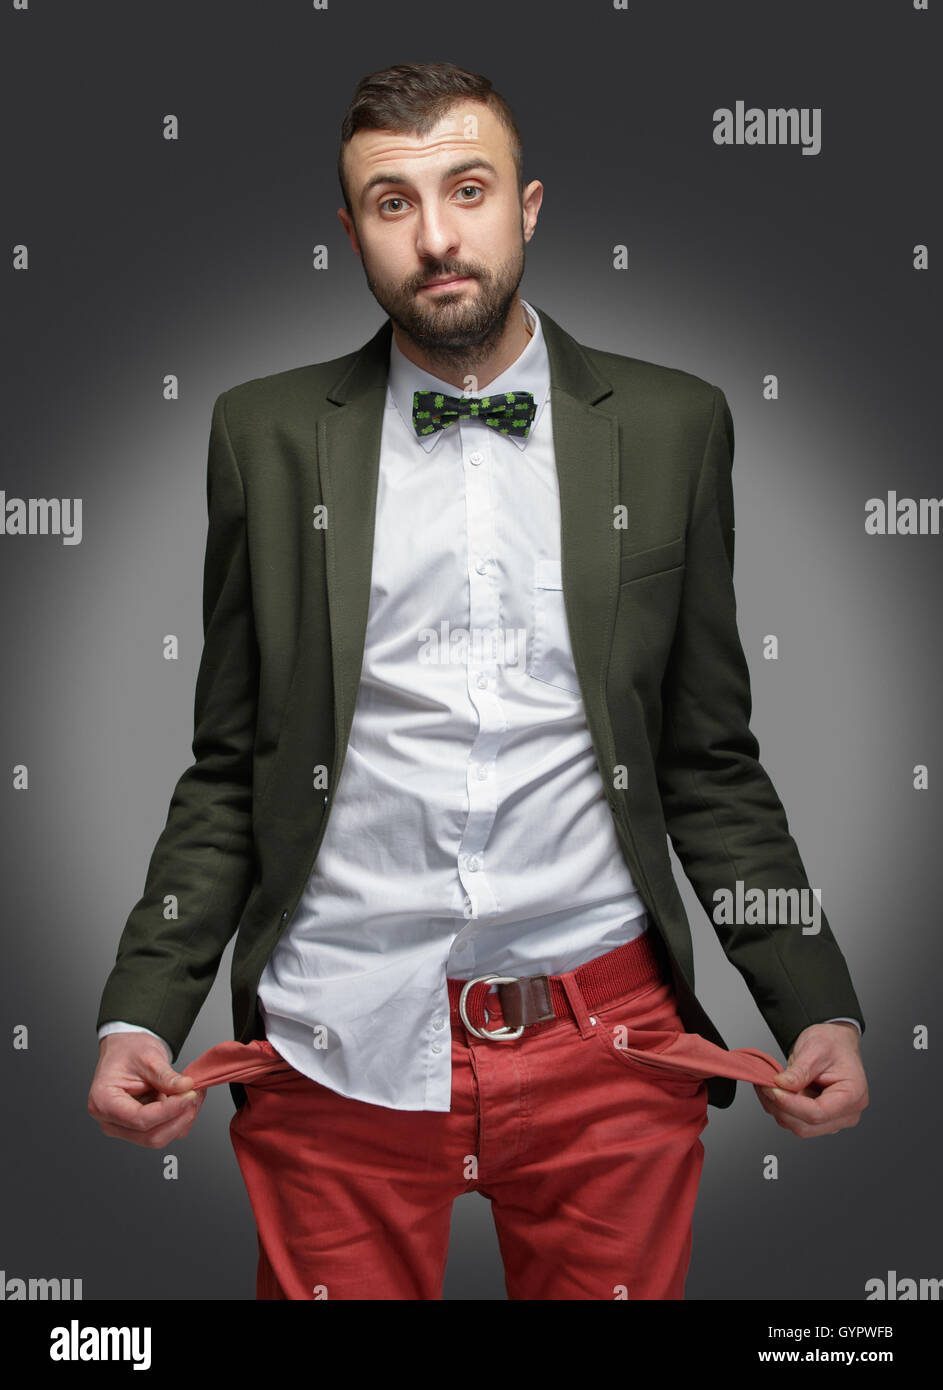 junger Mann in einem grünen Anzug, kein Geld Stockfotografie - Alamy